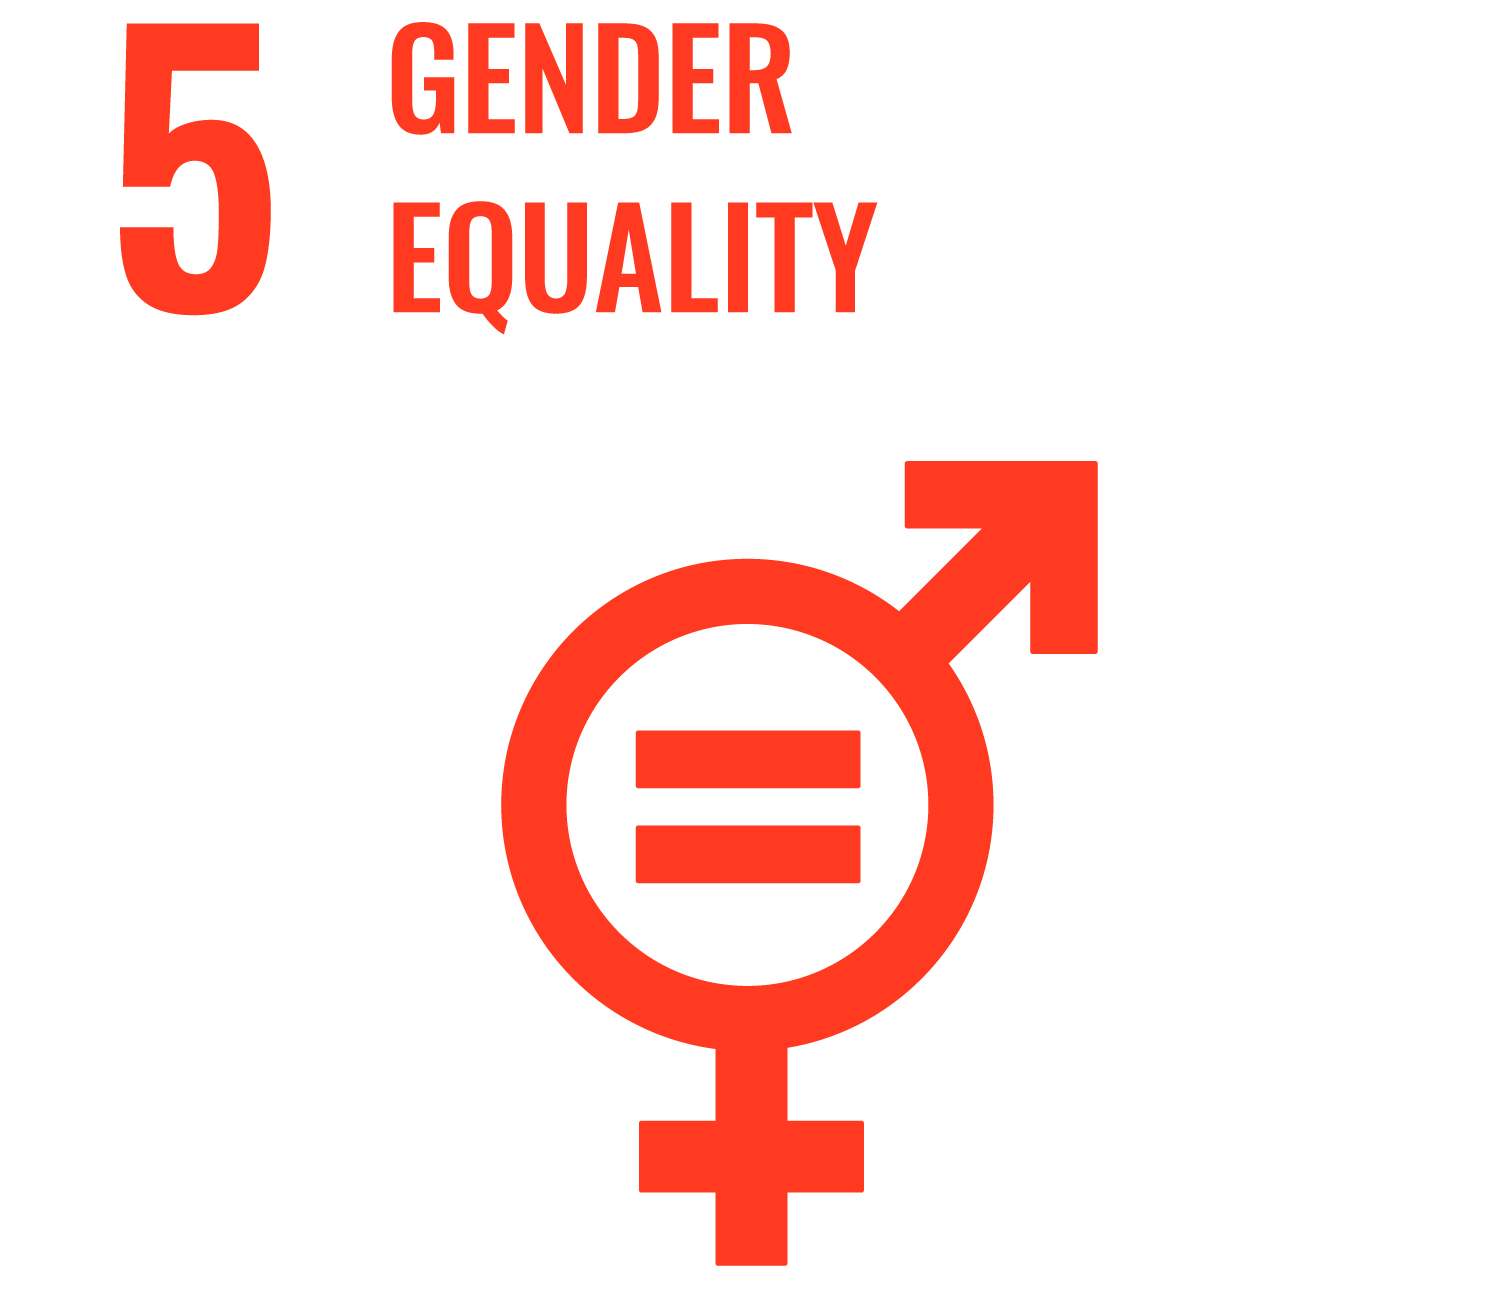 Goal 5: Gender Equality